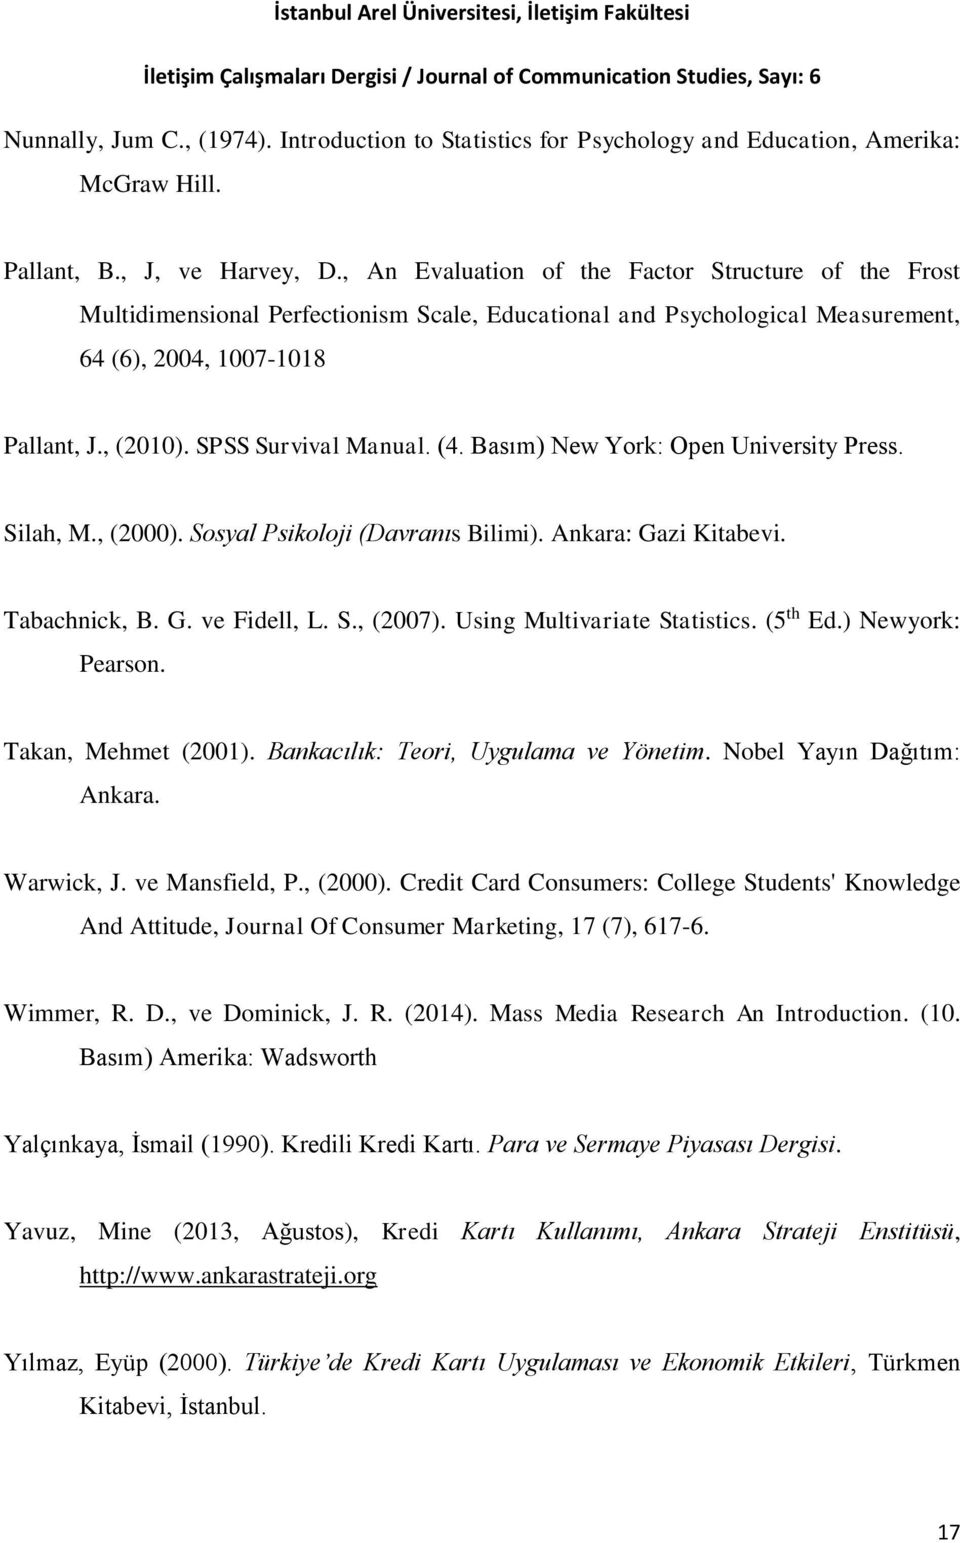 (4. Basım) New York: Open University Press. Silah, M., (2000). Sosyal Psikoloji (Davranıs Bilimi). Ankara: Gazi Kitabevi. Tabachnick, B. G. ve Fidell, L. S., (2007). Using Multivariate Statistics.